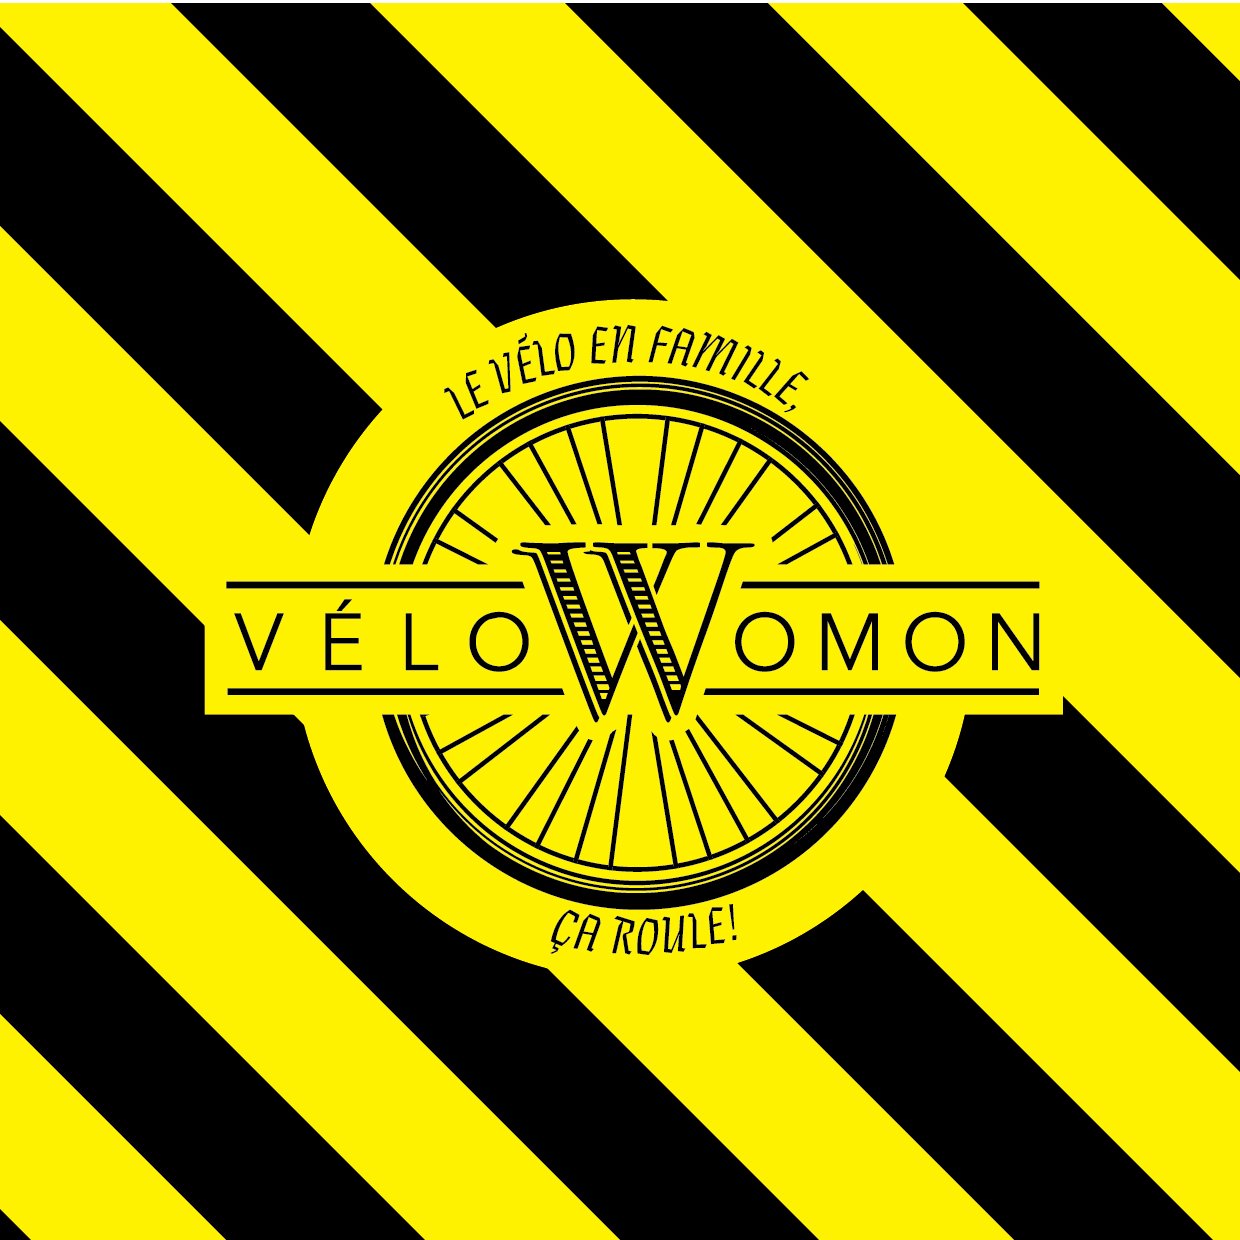 Vélowomon est une asso créée en 2015 par une femme et sa vision de la #mobilité. L'asso démocratise l'usage... du #velocargo comme alternative à la voiture